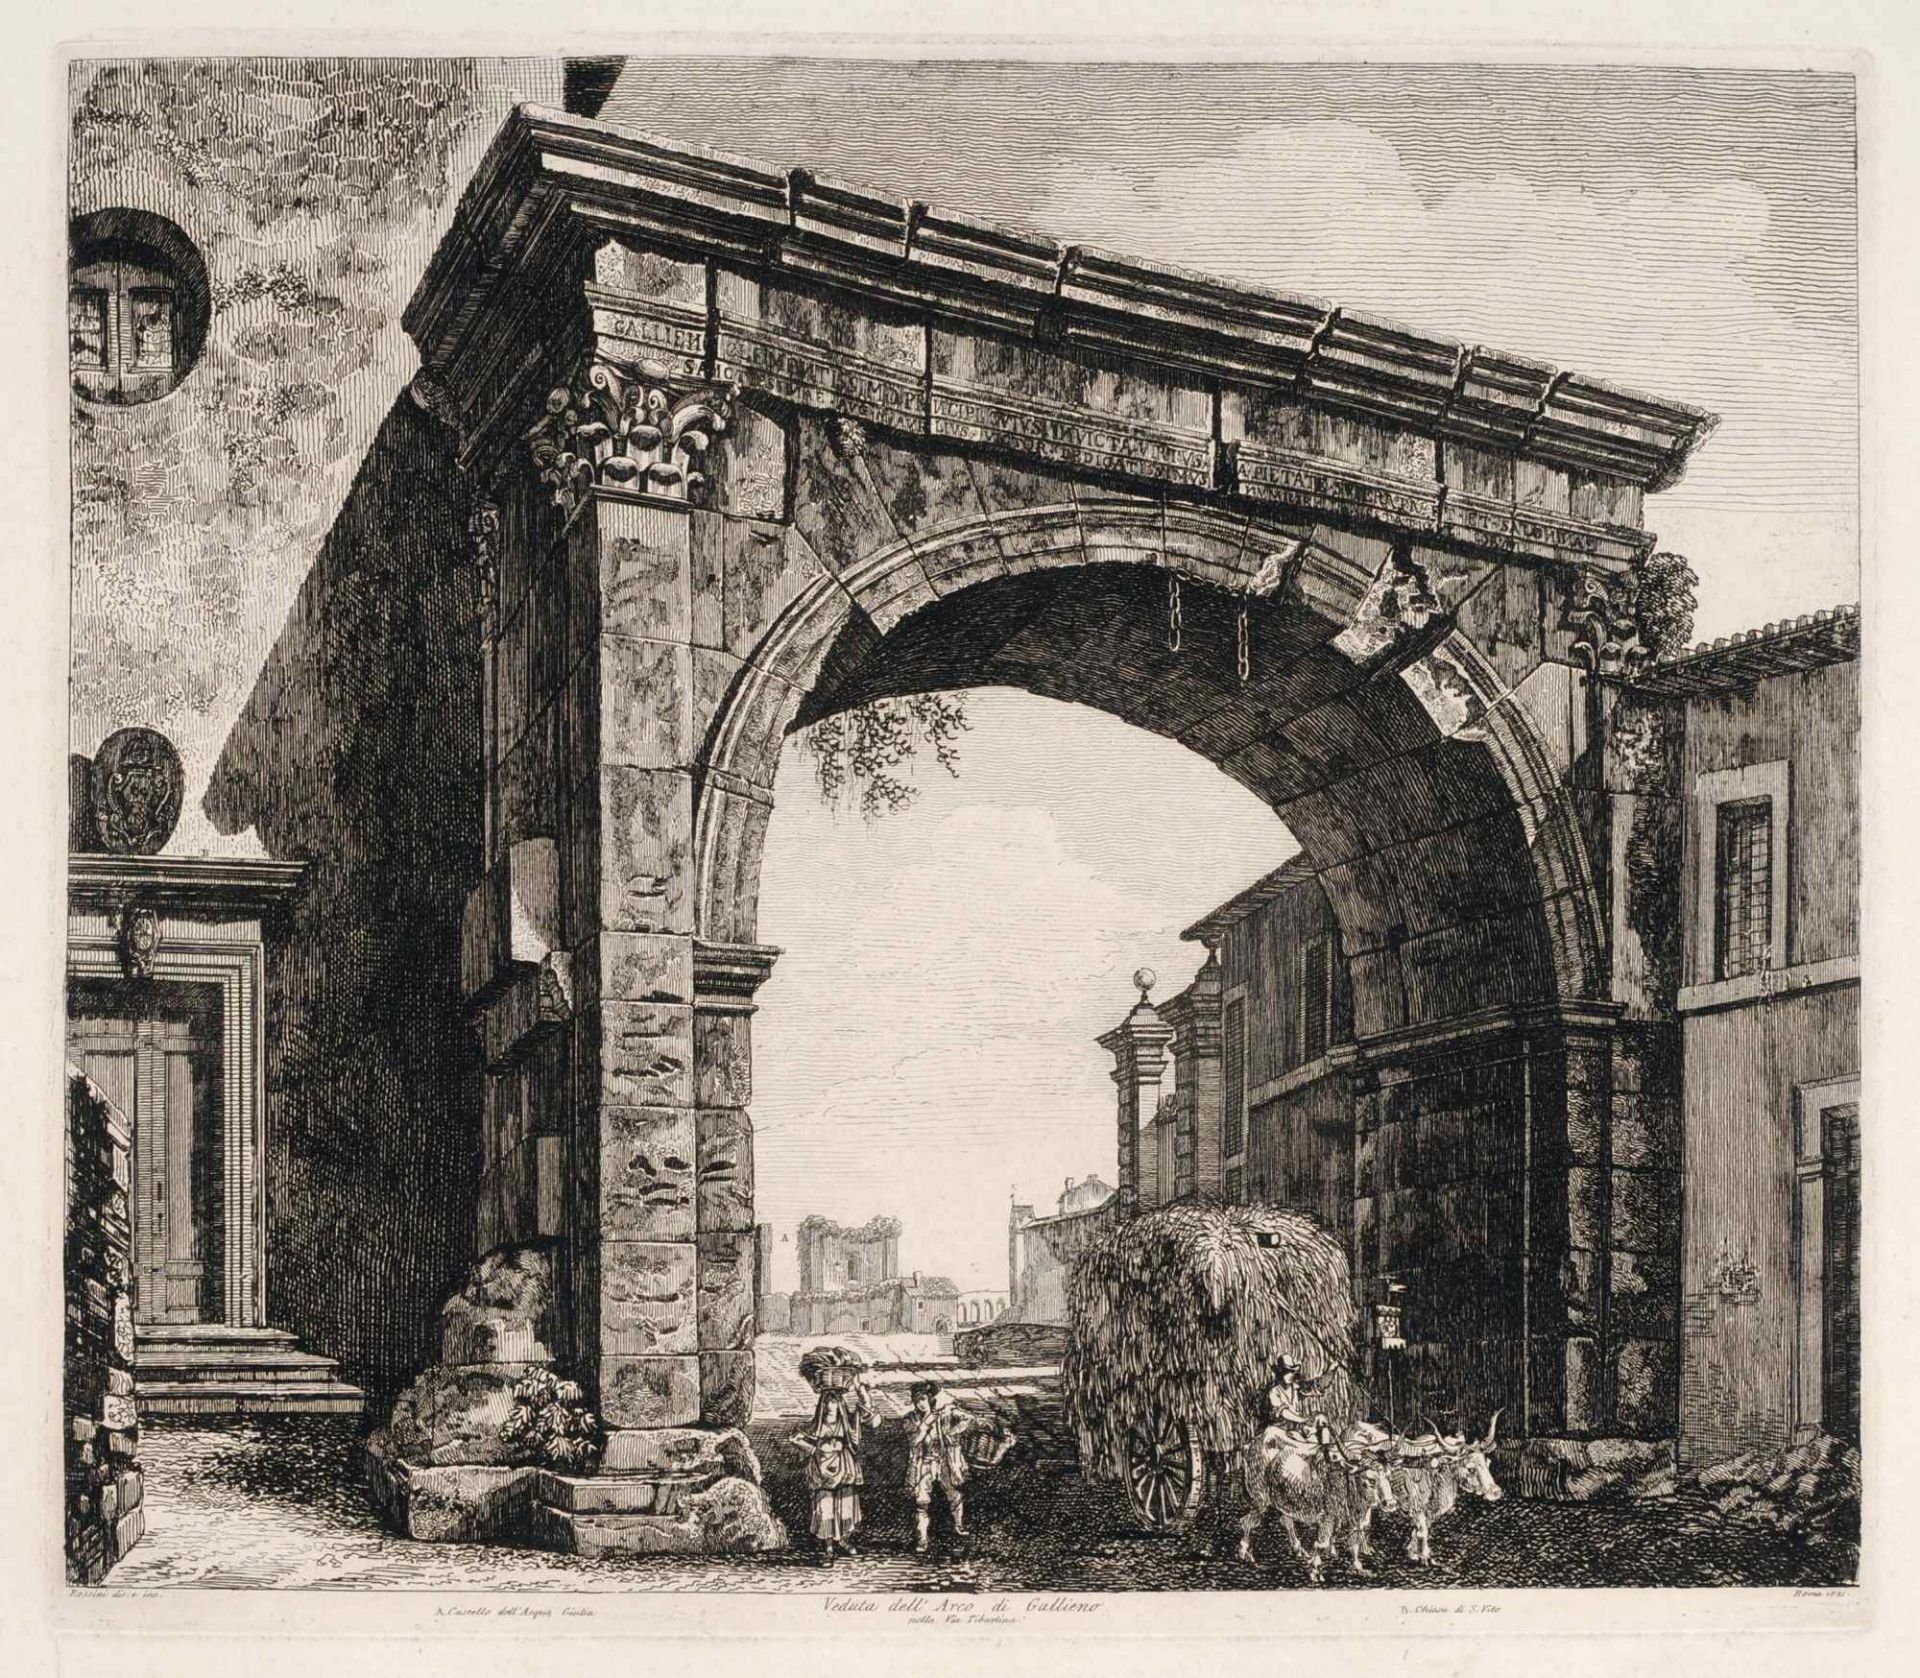 Luigi Rossini "Veduta dell' Arco die Gallieno nella Via Tiburtina". 1821.